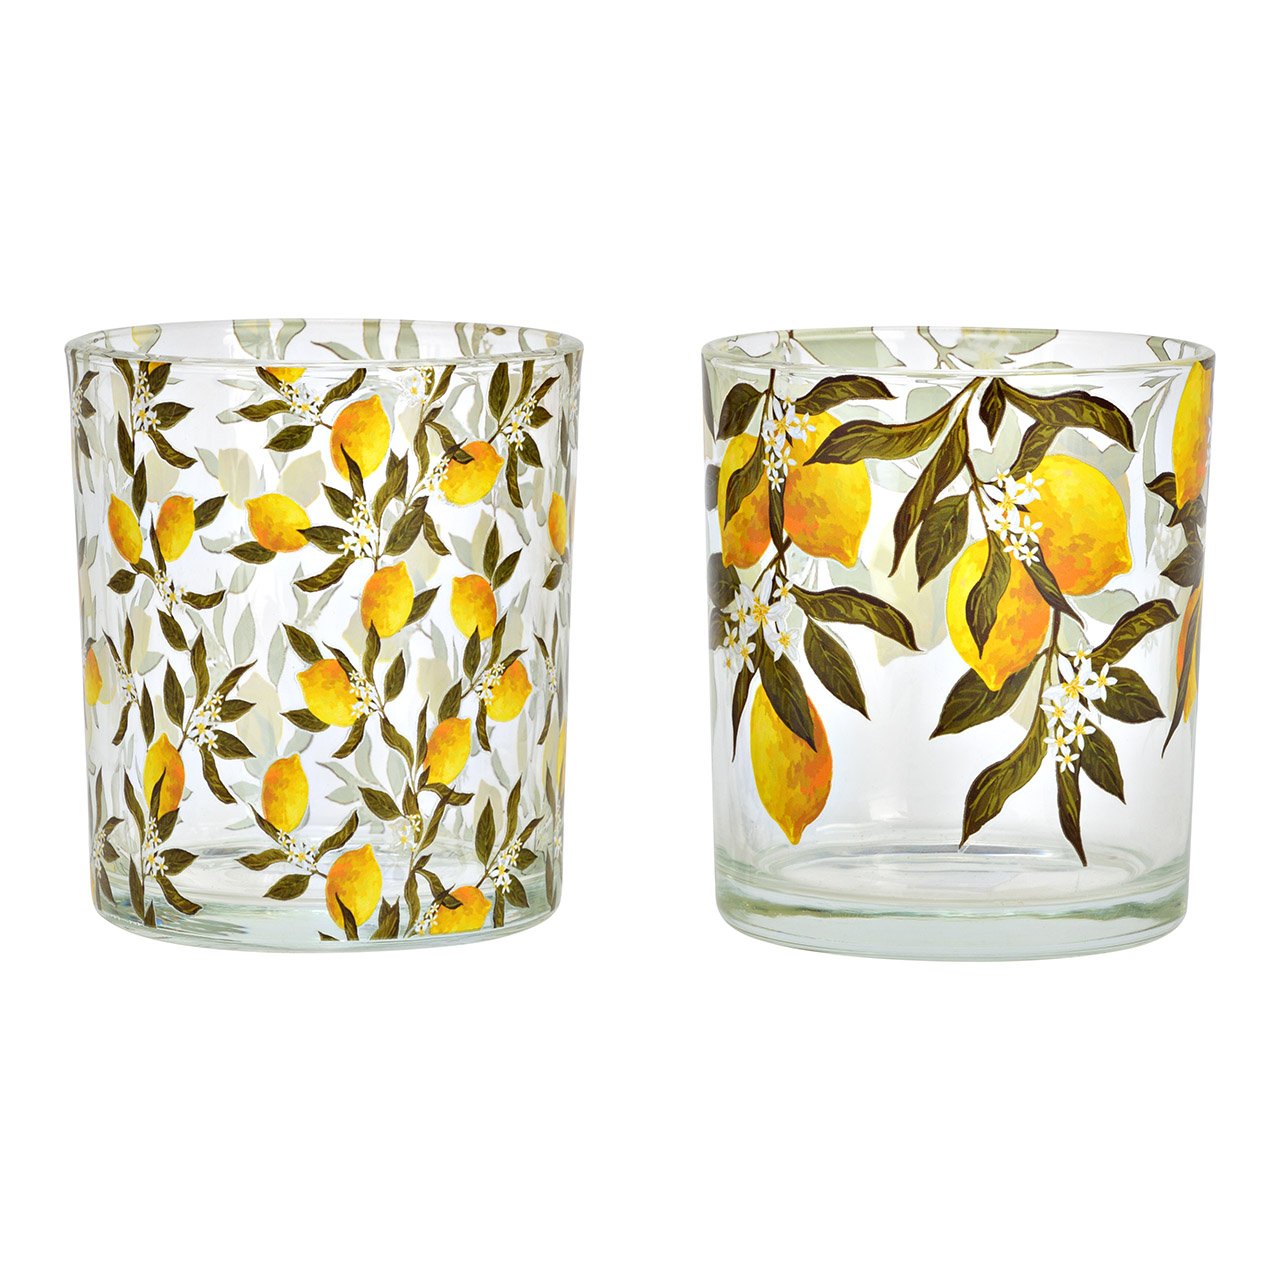 Lanterna di vetro giallo limone 2 pieghe, (L/H/D) 9x10x9cm